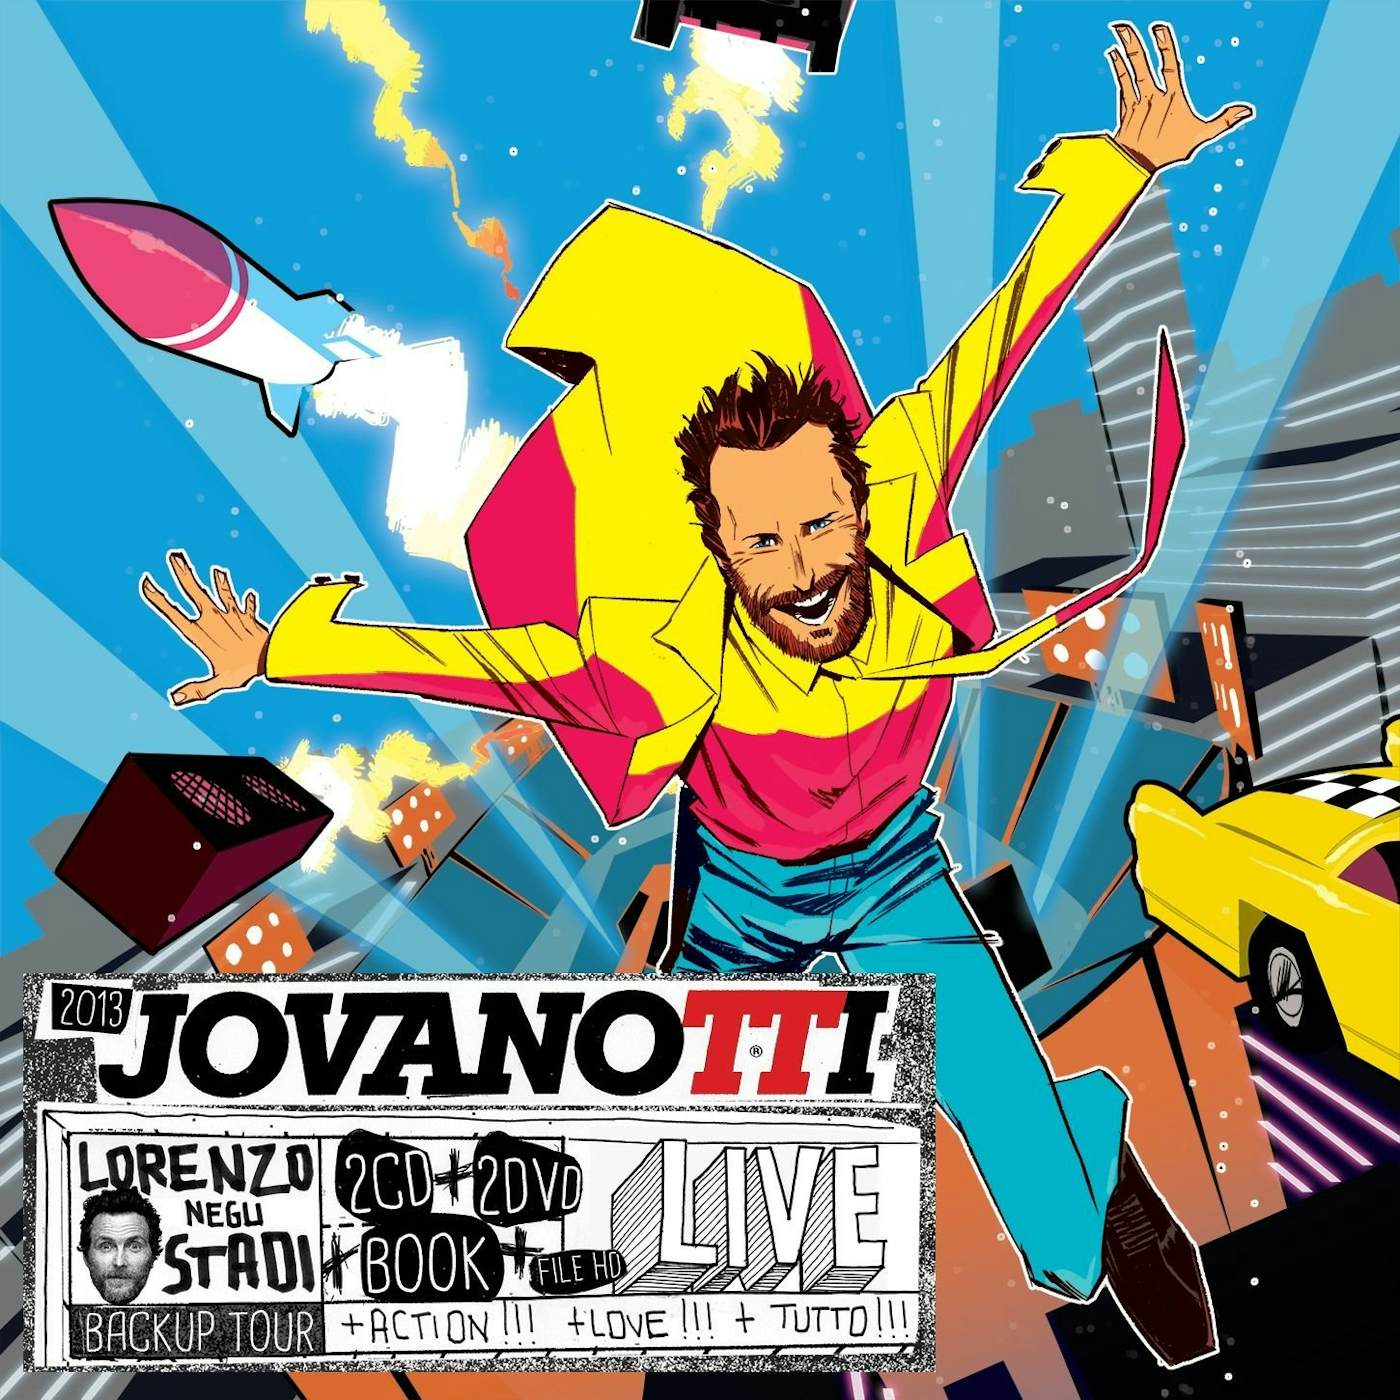 Jovanotti LORENZO NEGLI STADI: BACKUP TOUR CD